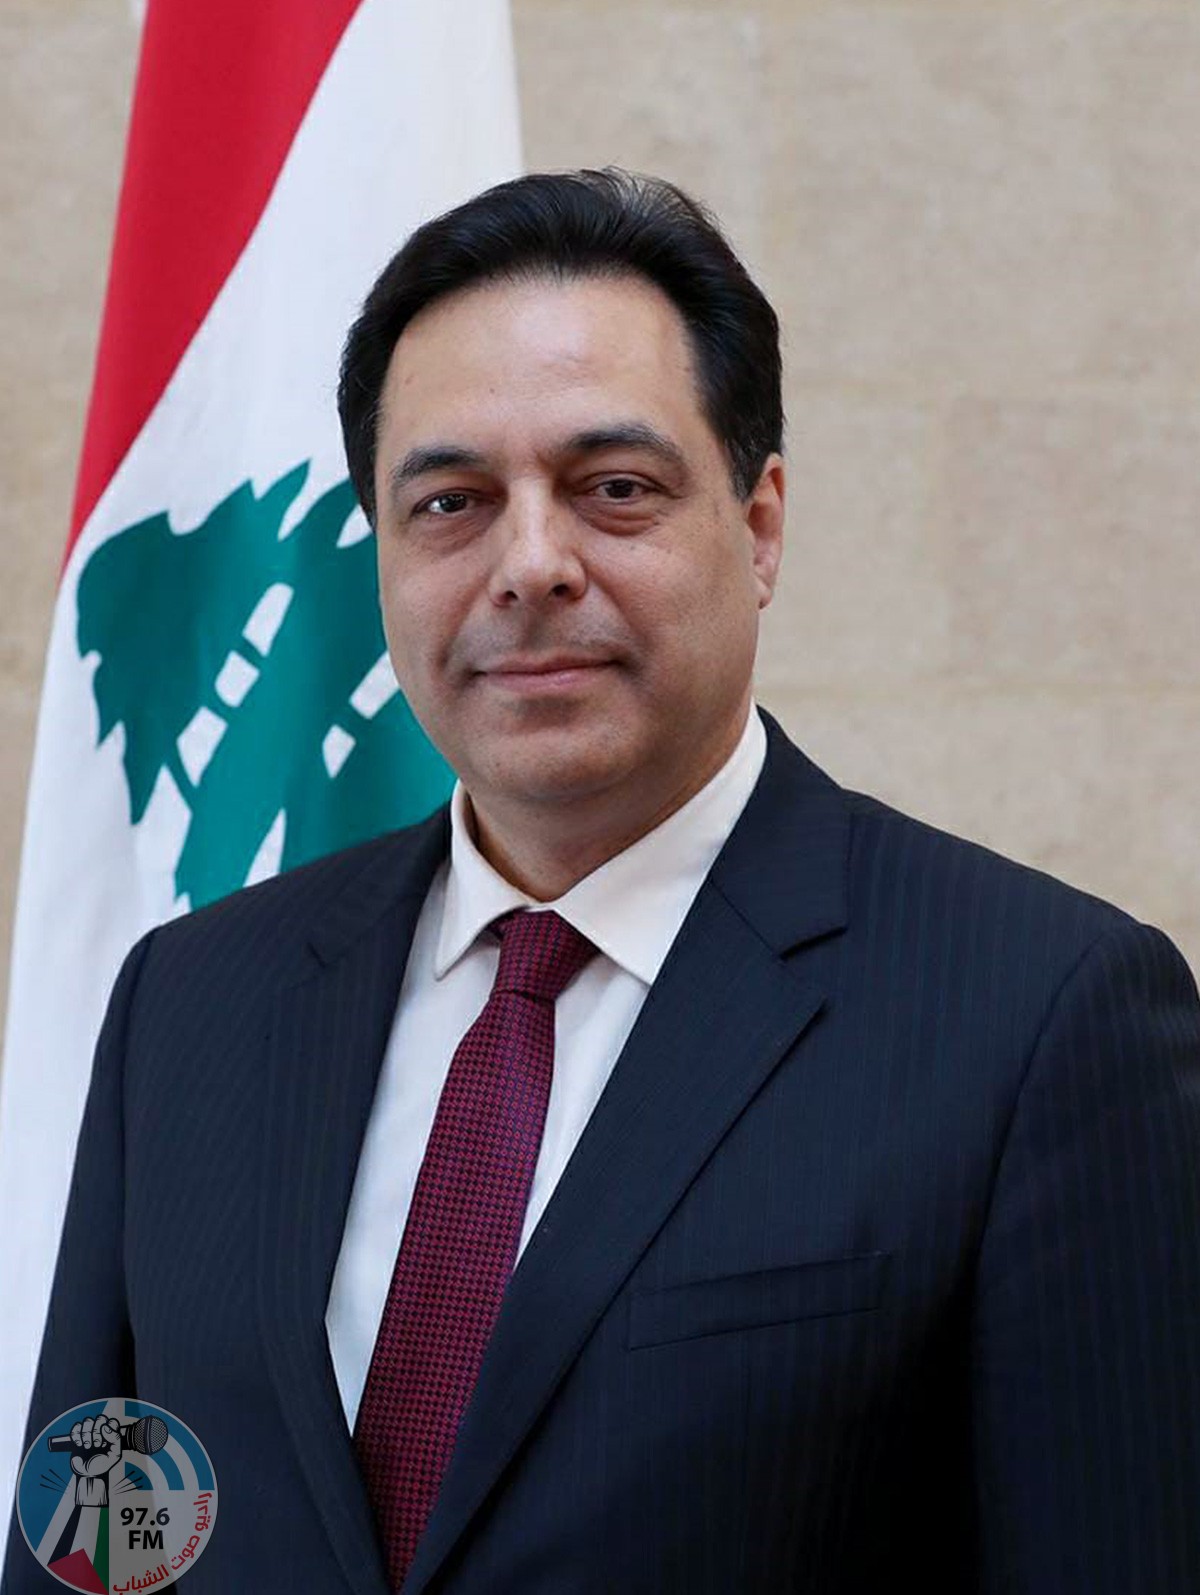 رئيس وزراء لبنان: إسرائيل تريد افتعال فتنة في لبنان للتغطية على مخطط الضم